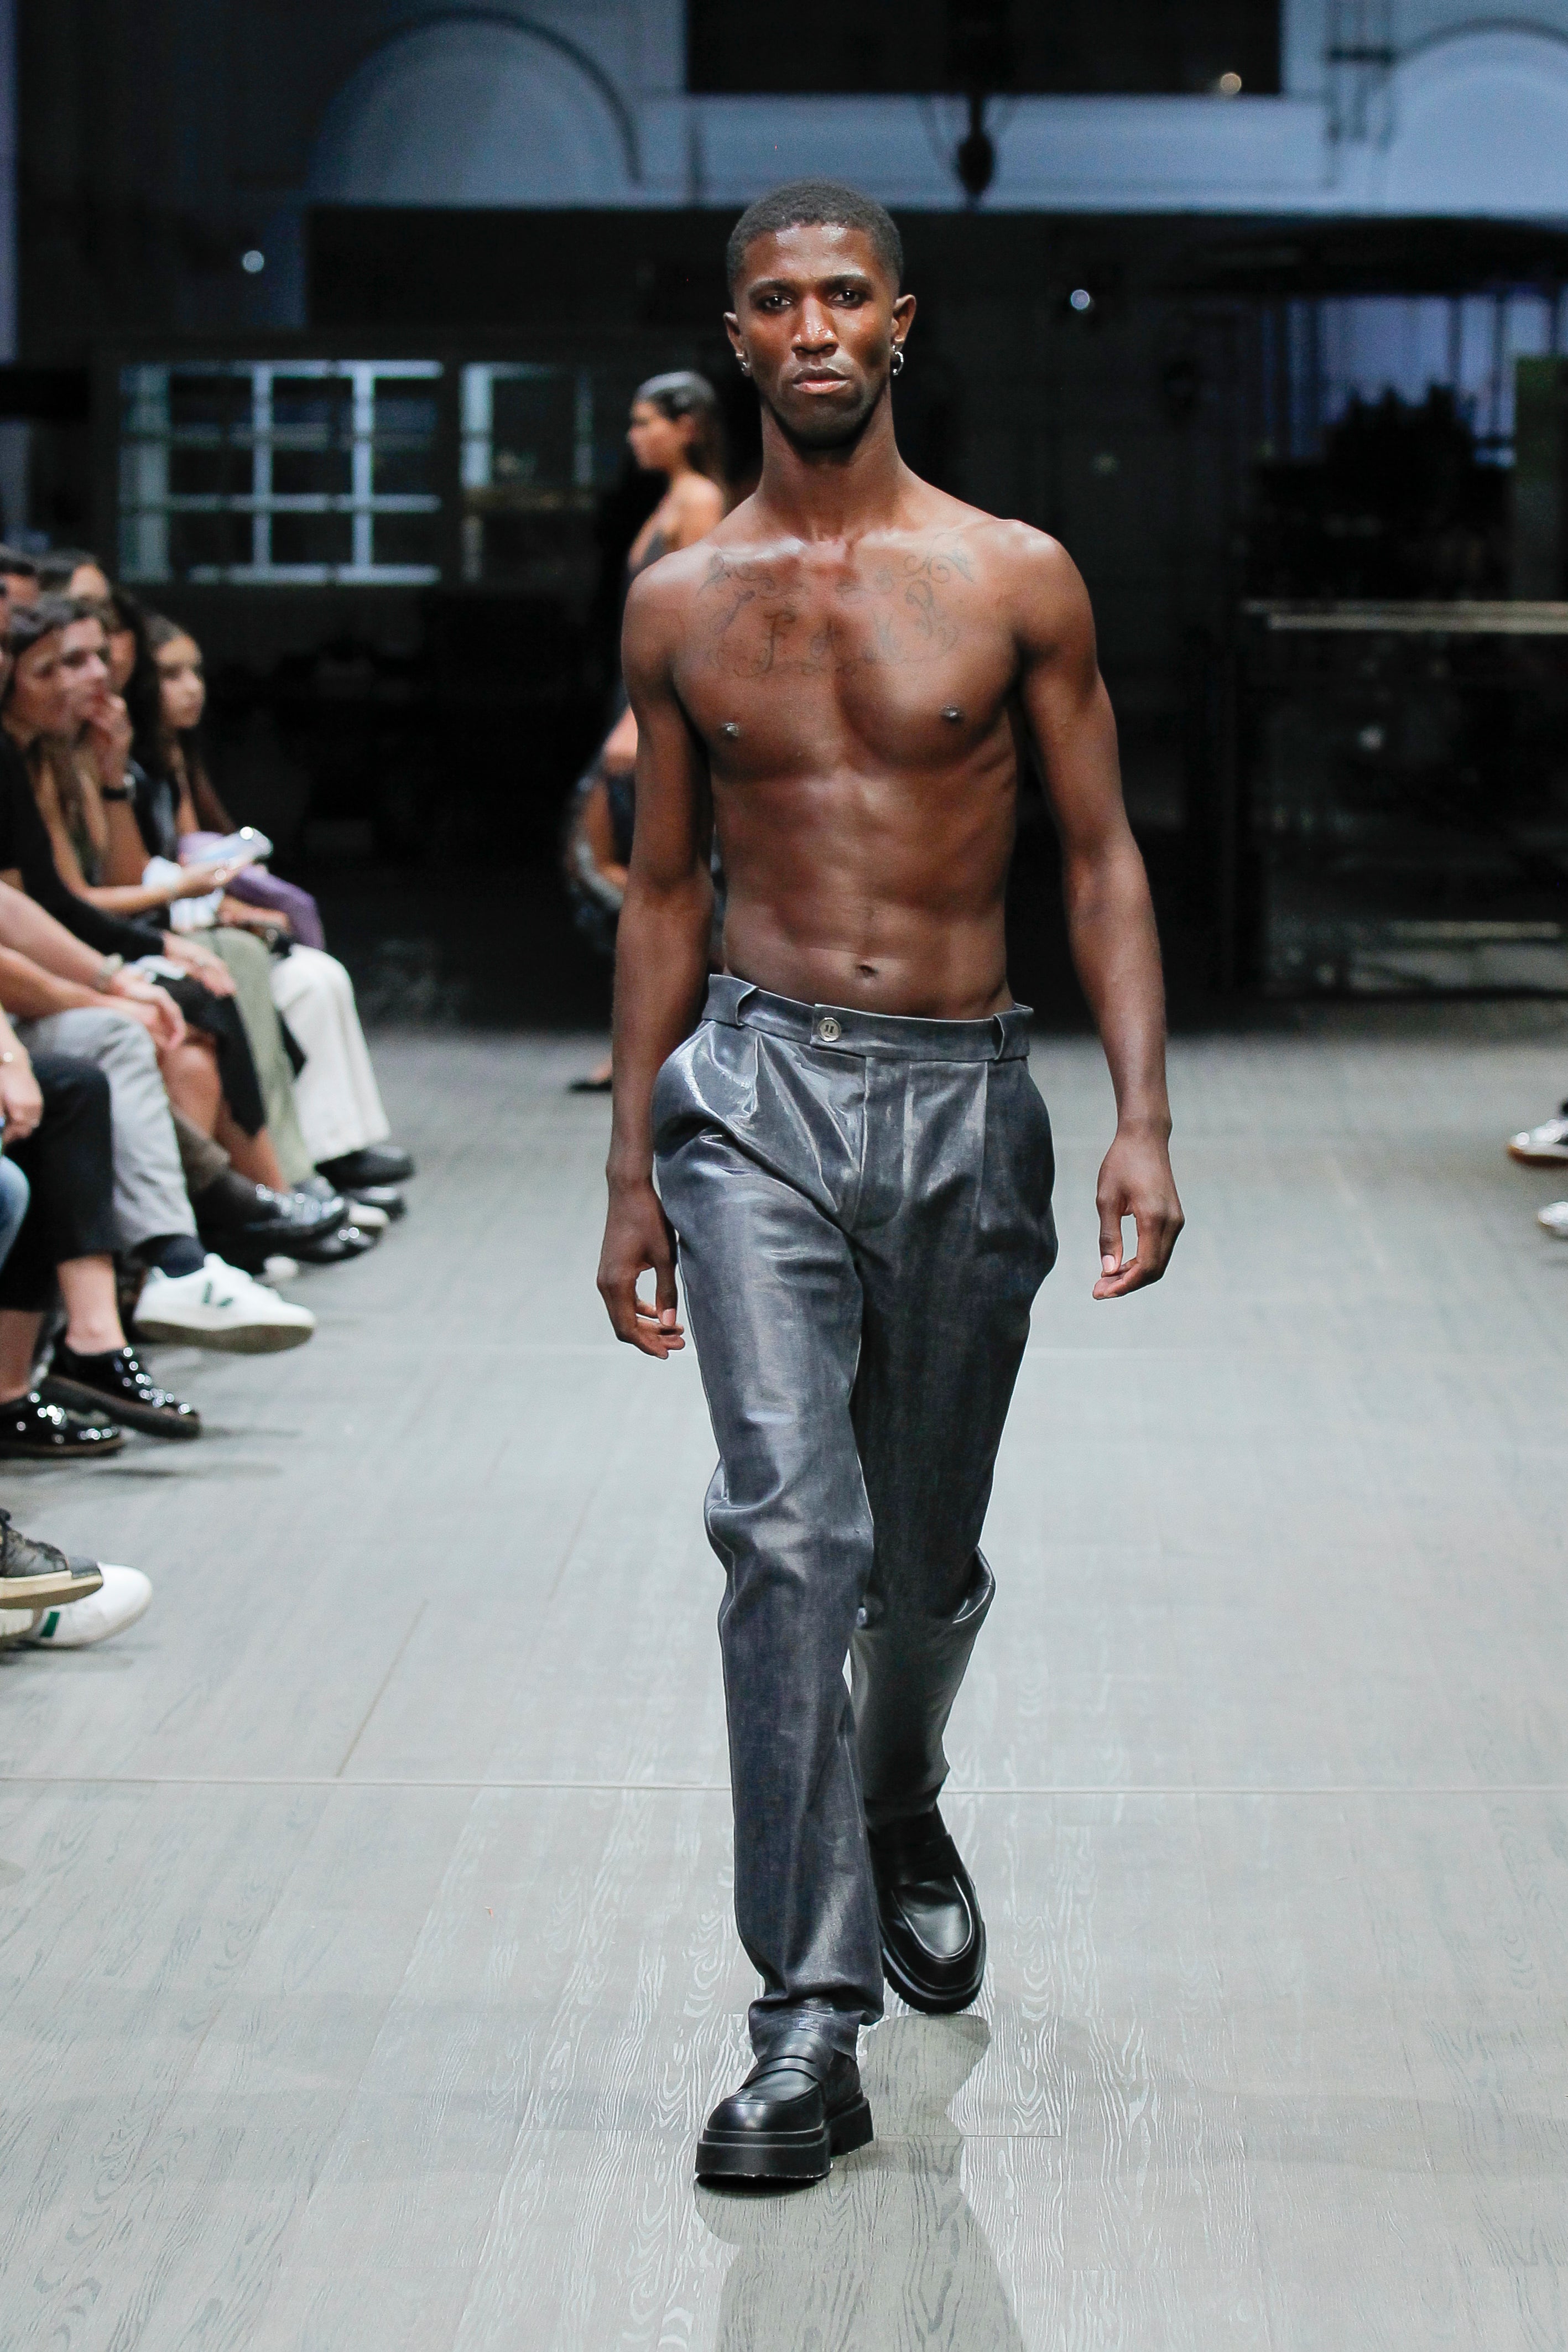 Denim Men Pants with Transparent Foil